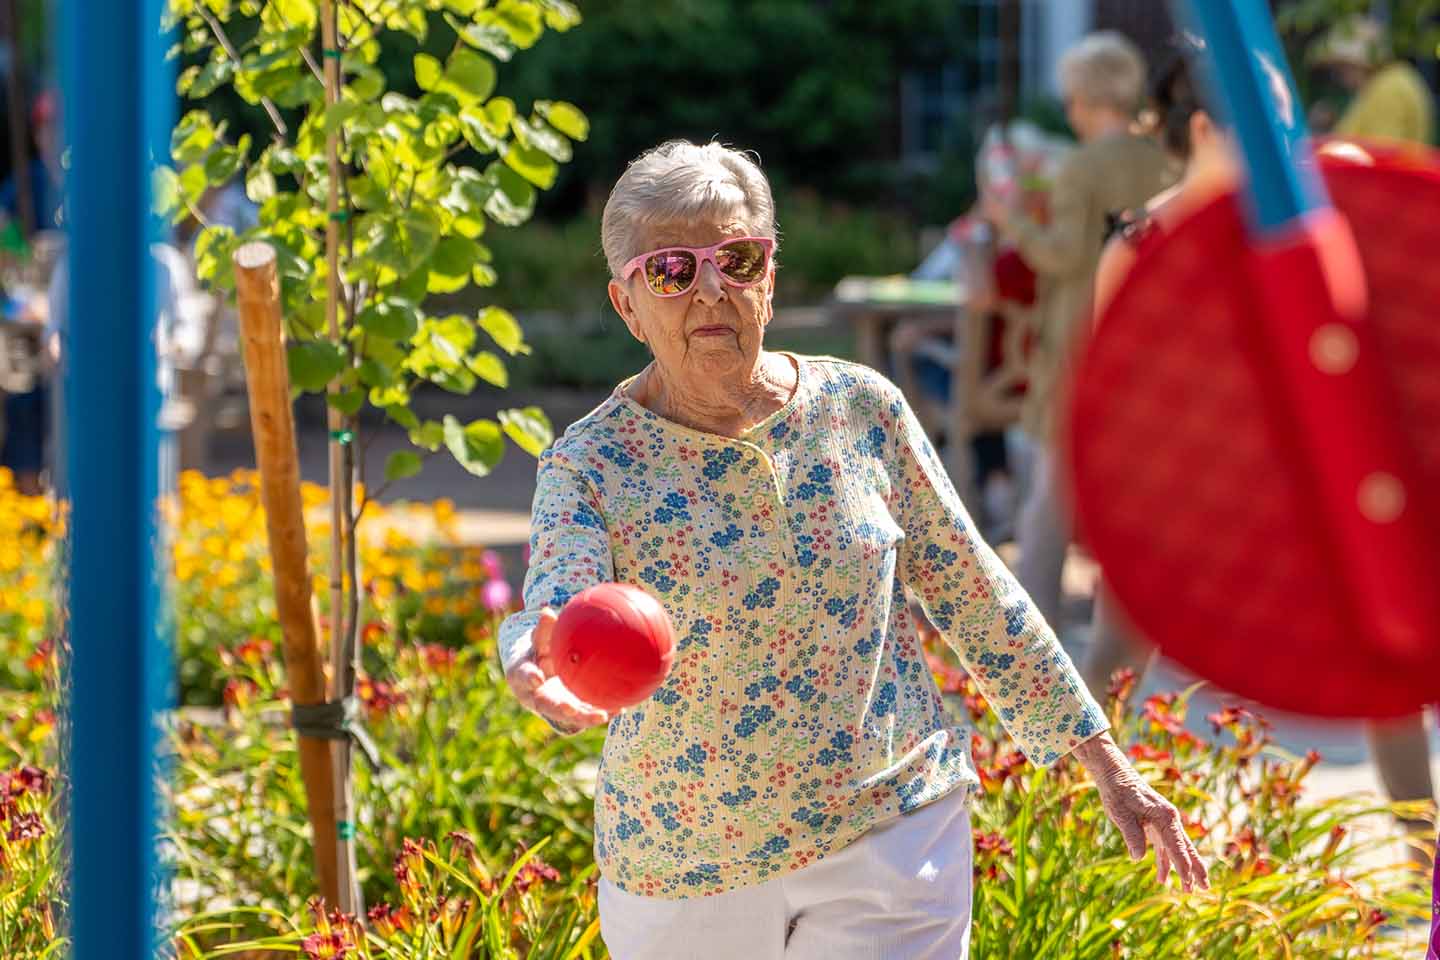 A senior woman throws a ball at a target.